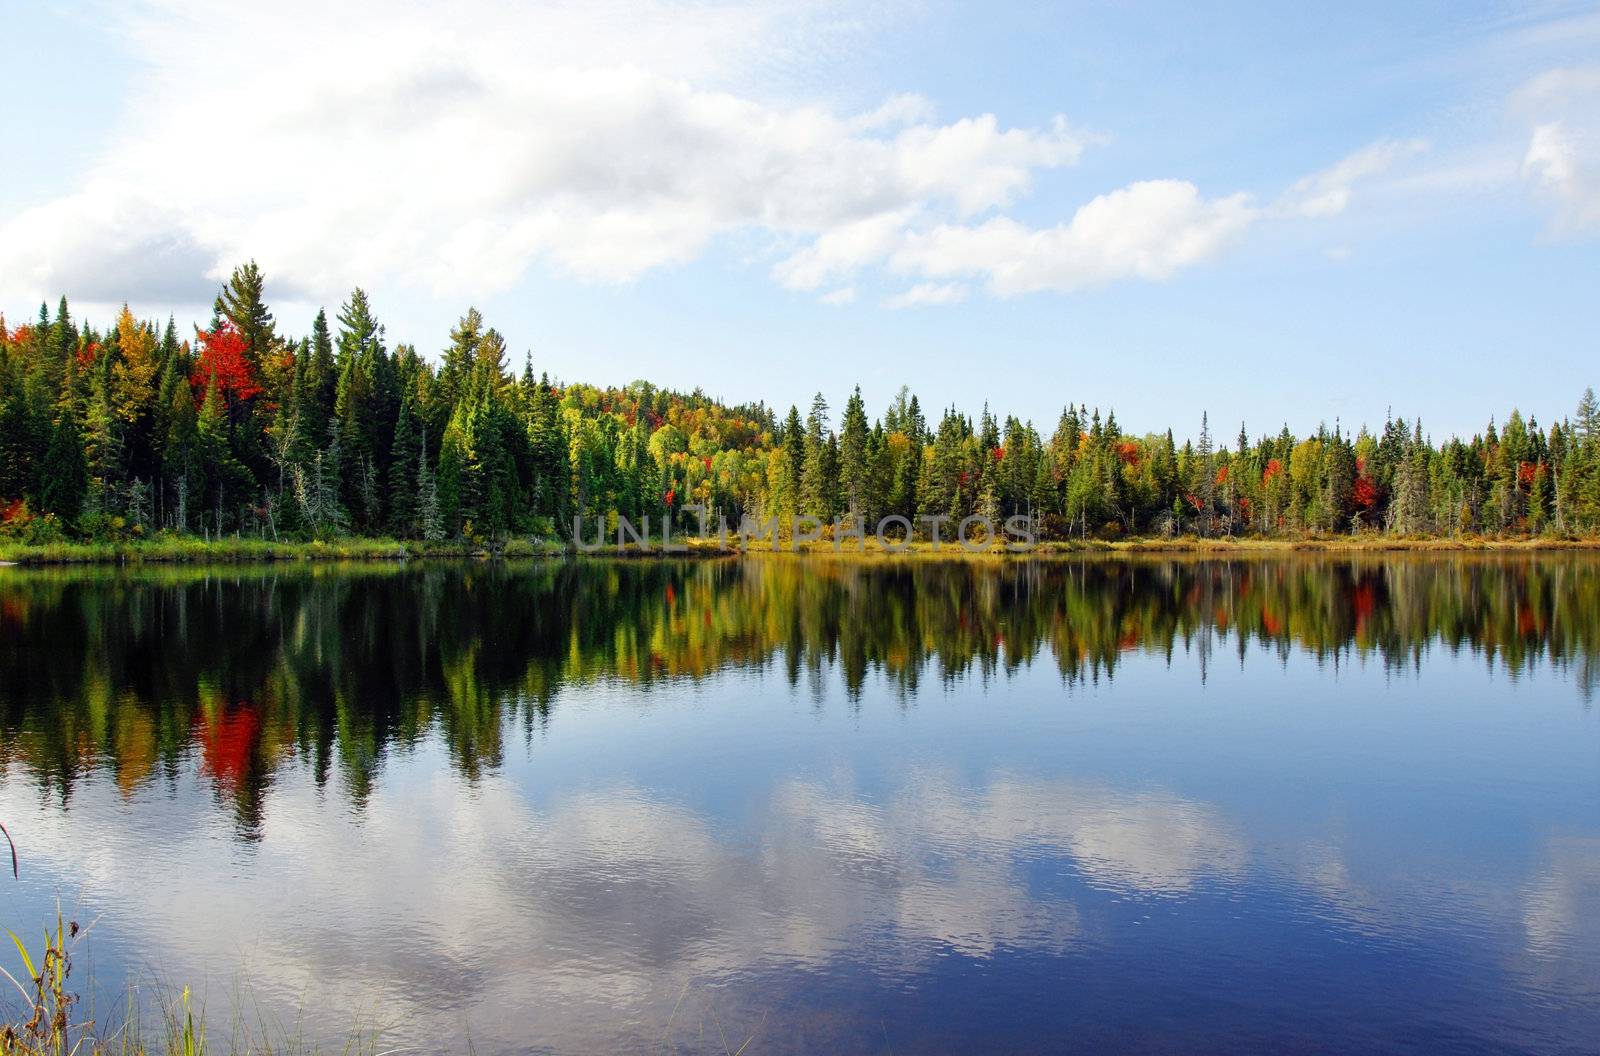 Fall season at a northern lake by Mirage3